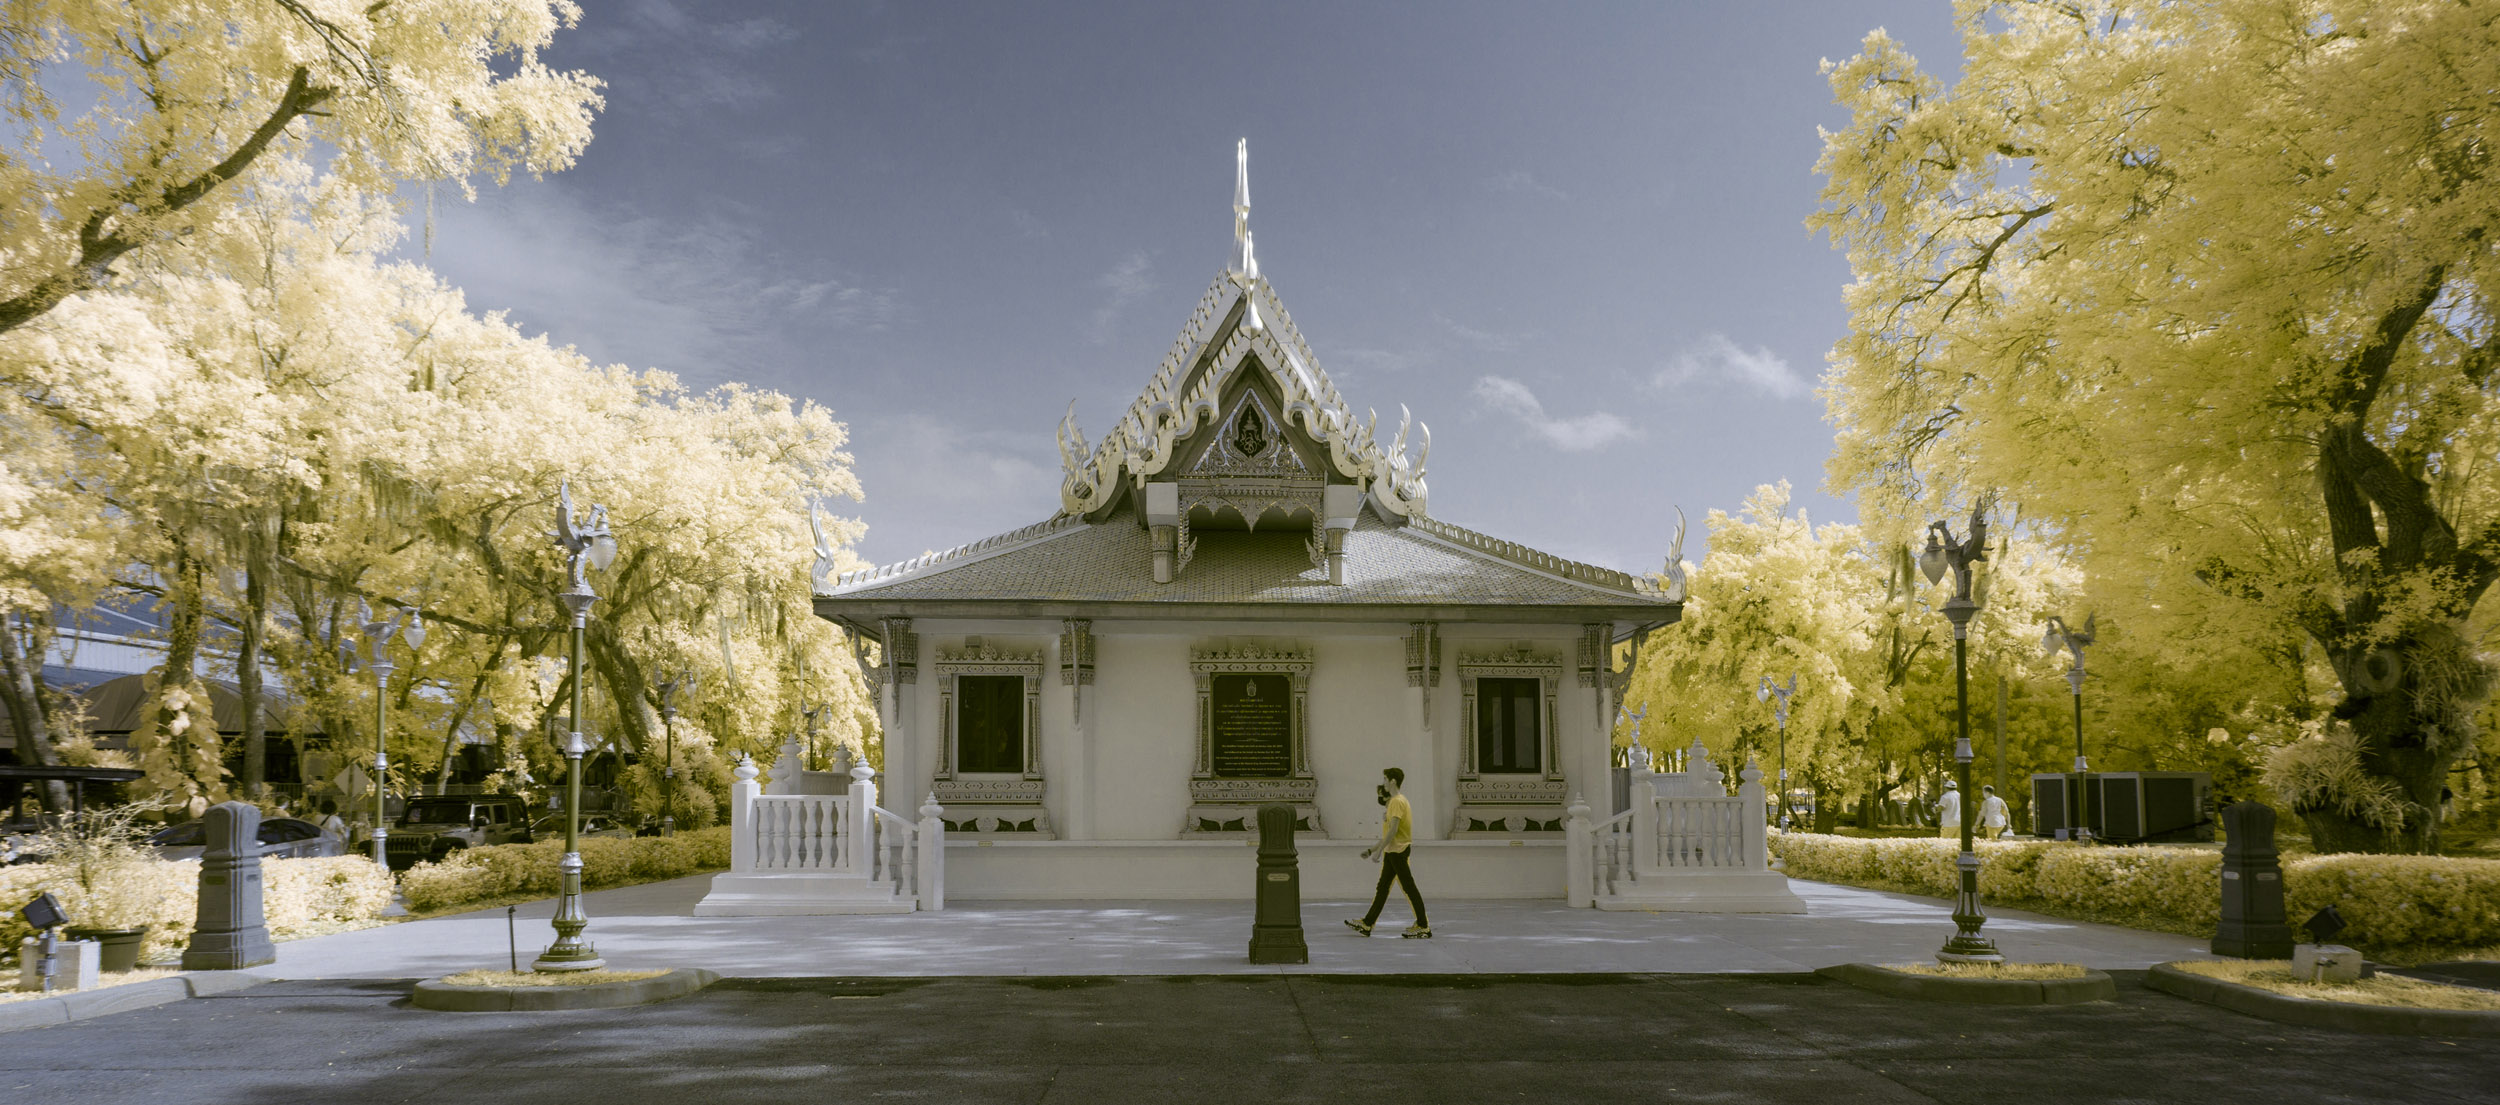 DanWaterman Landscape IR Thai Temple 0ffb261a 496d 4a0e a86e b409716161f0